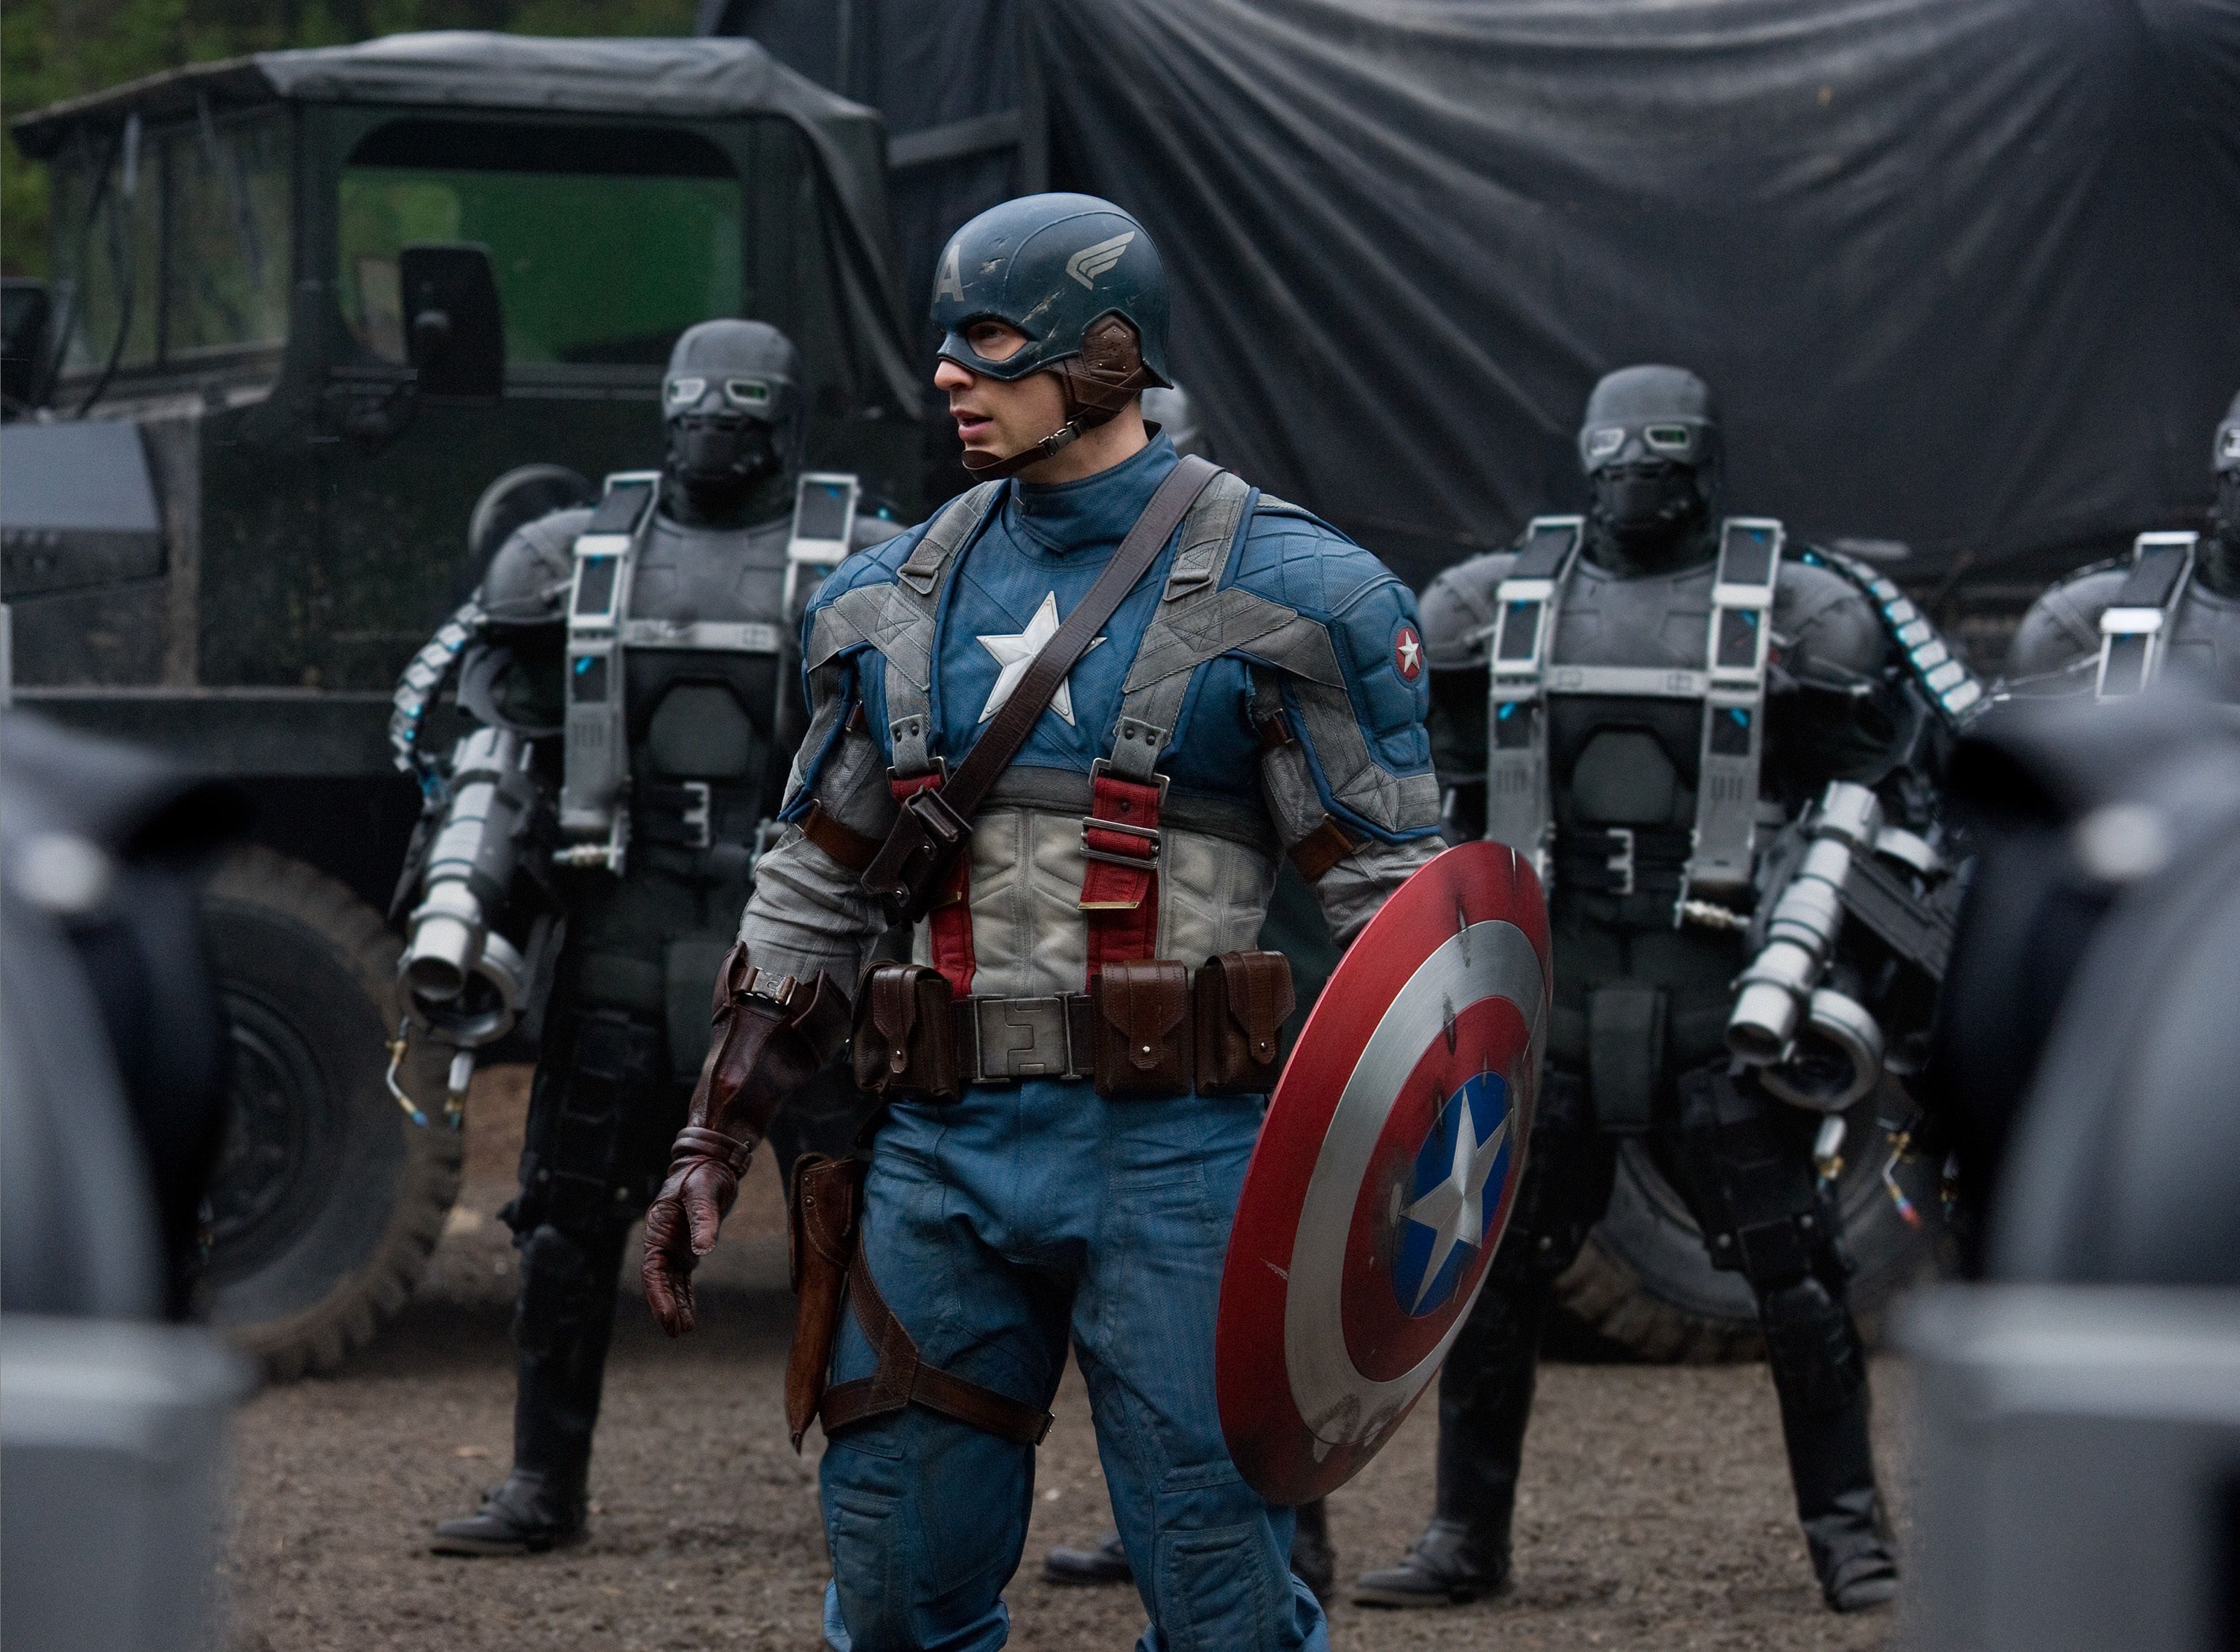 Chris Evans in full costume as Captain America: The First Avenger